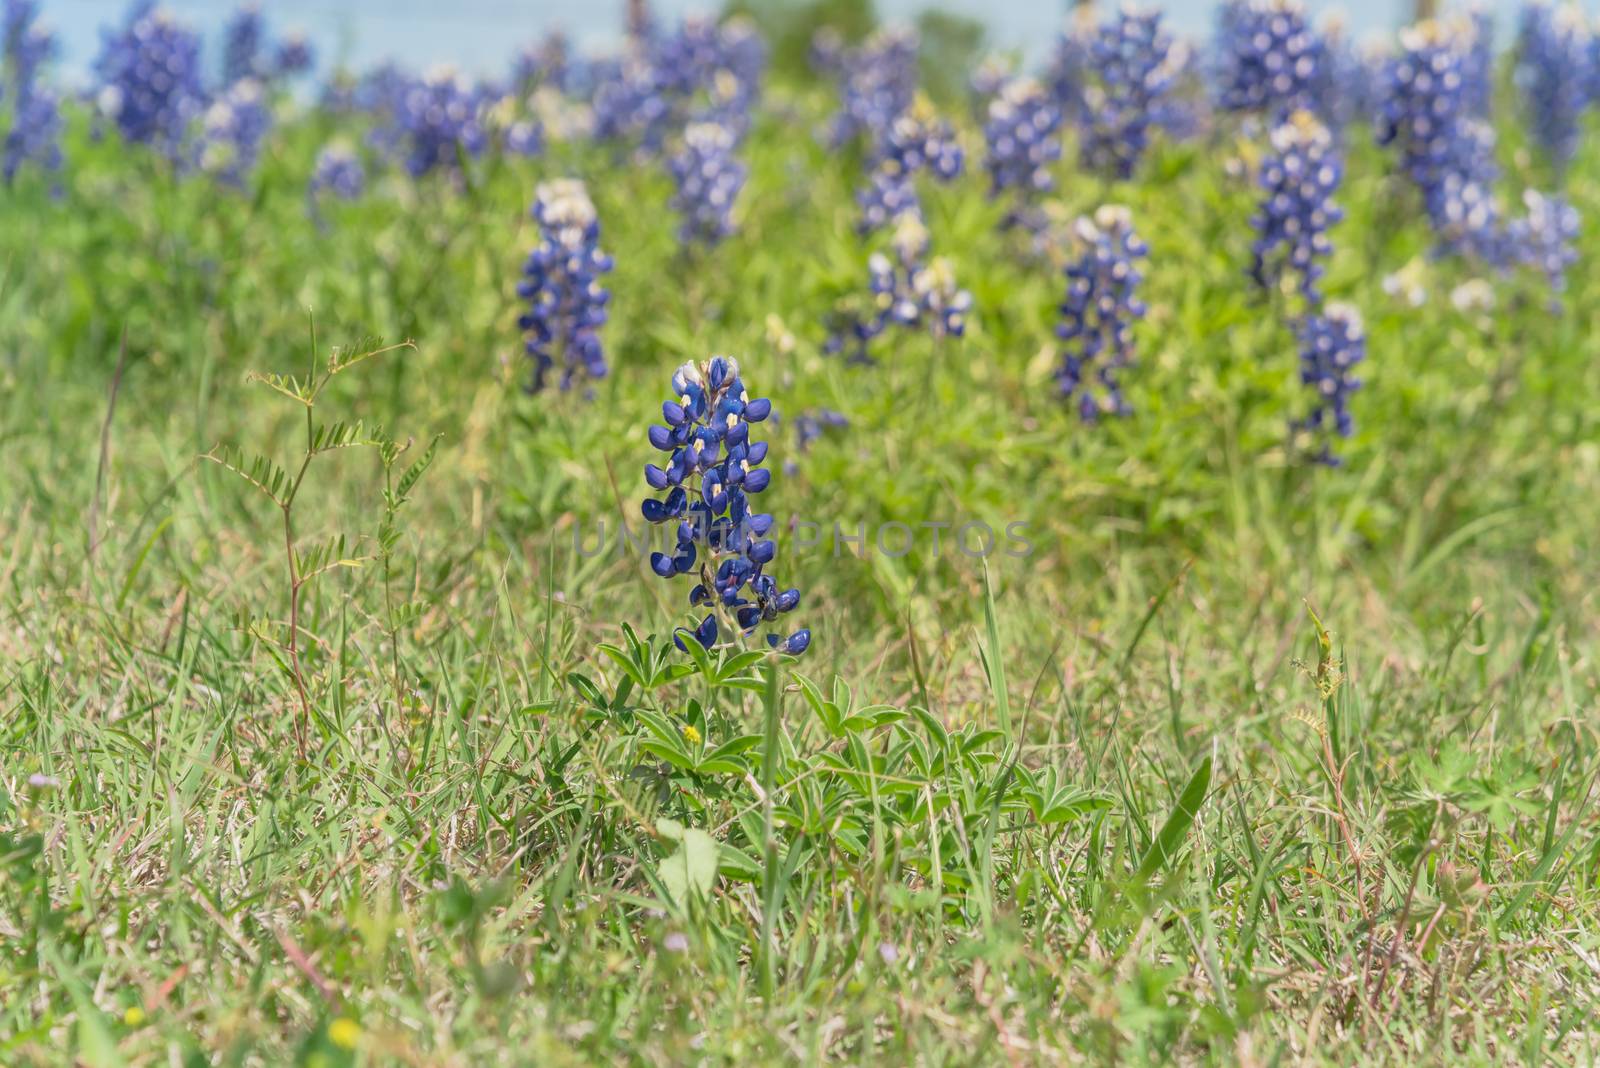 Beautiful Bluebonnet wildflower blossom in Texas, America by trongnguyen